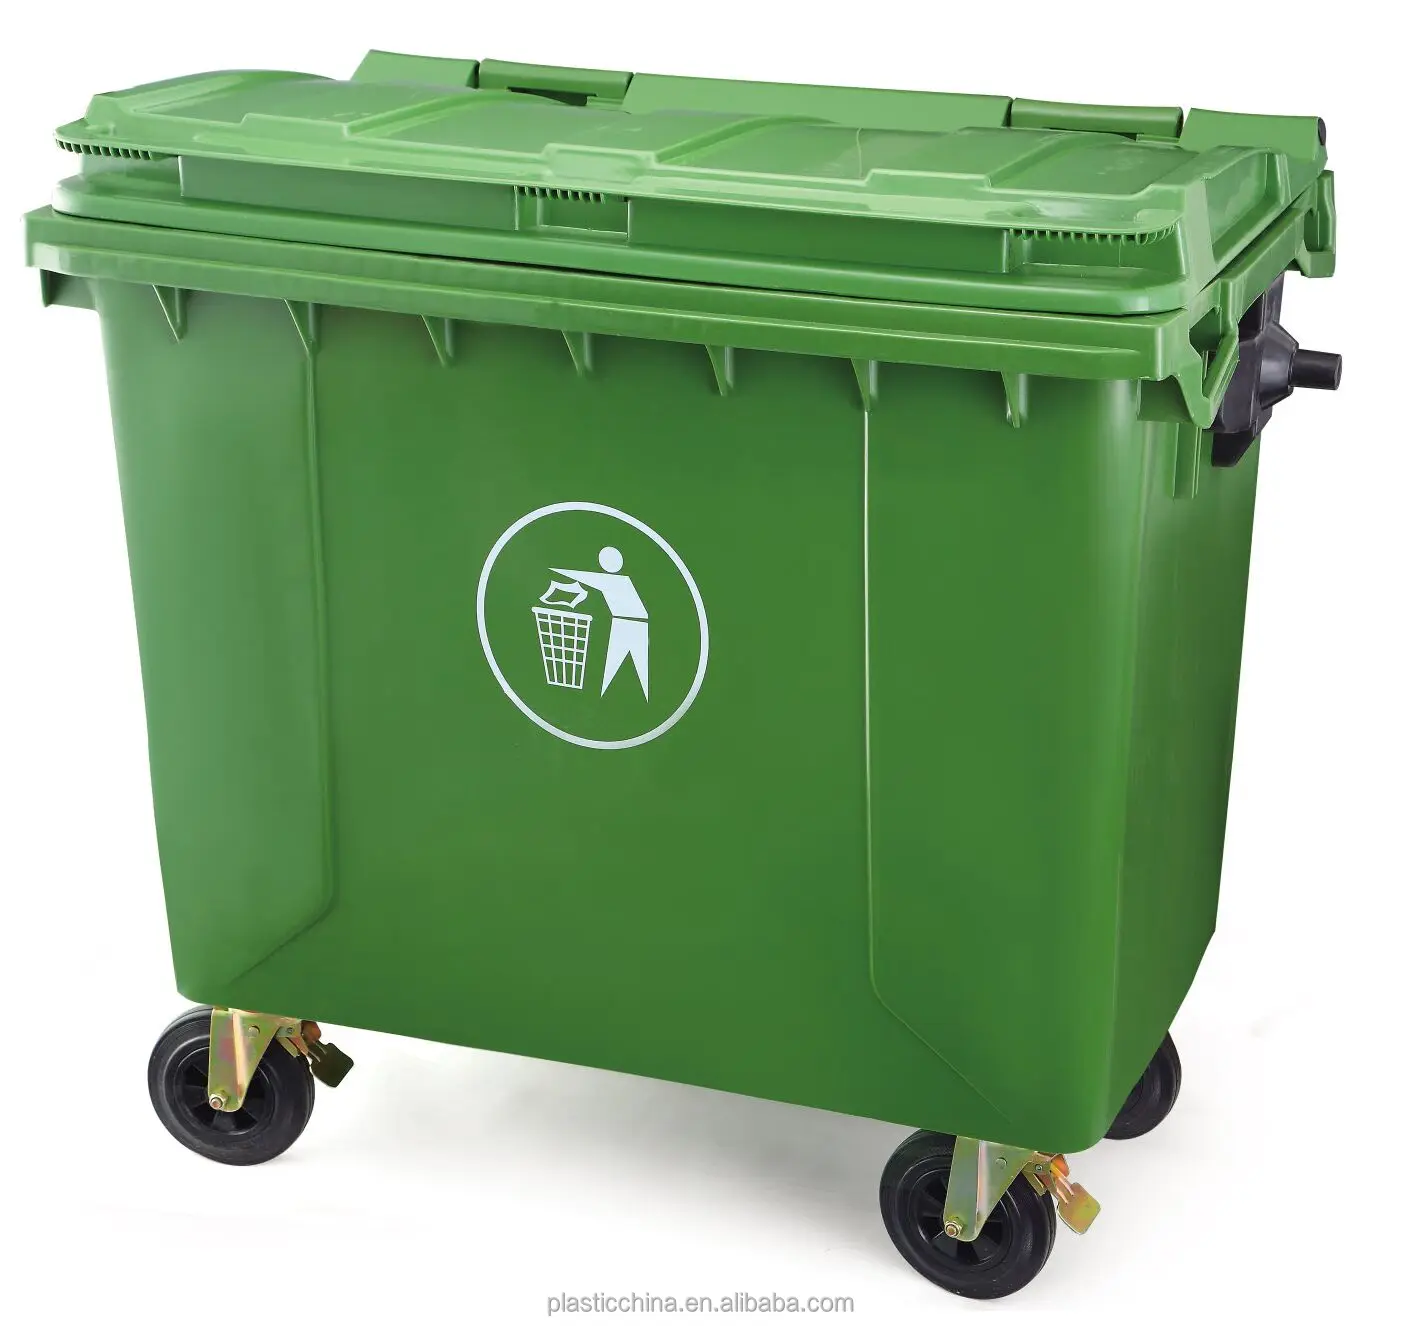 Крышка мусорного контейнера 1100. Контейнер ТКО 1100 Л зеленый. Мусорный бак 1100 л. MGB-1100 мусорный контейнер. Контейнер мусорный передвижной 1100 л с крышкой (арт.22.c19) (зеленый).